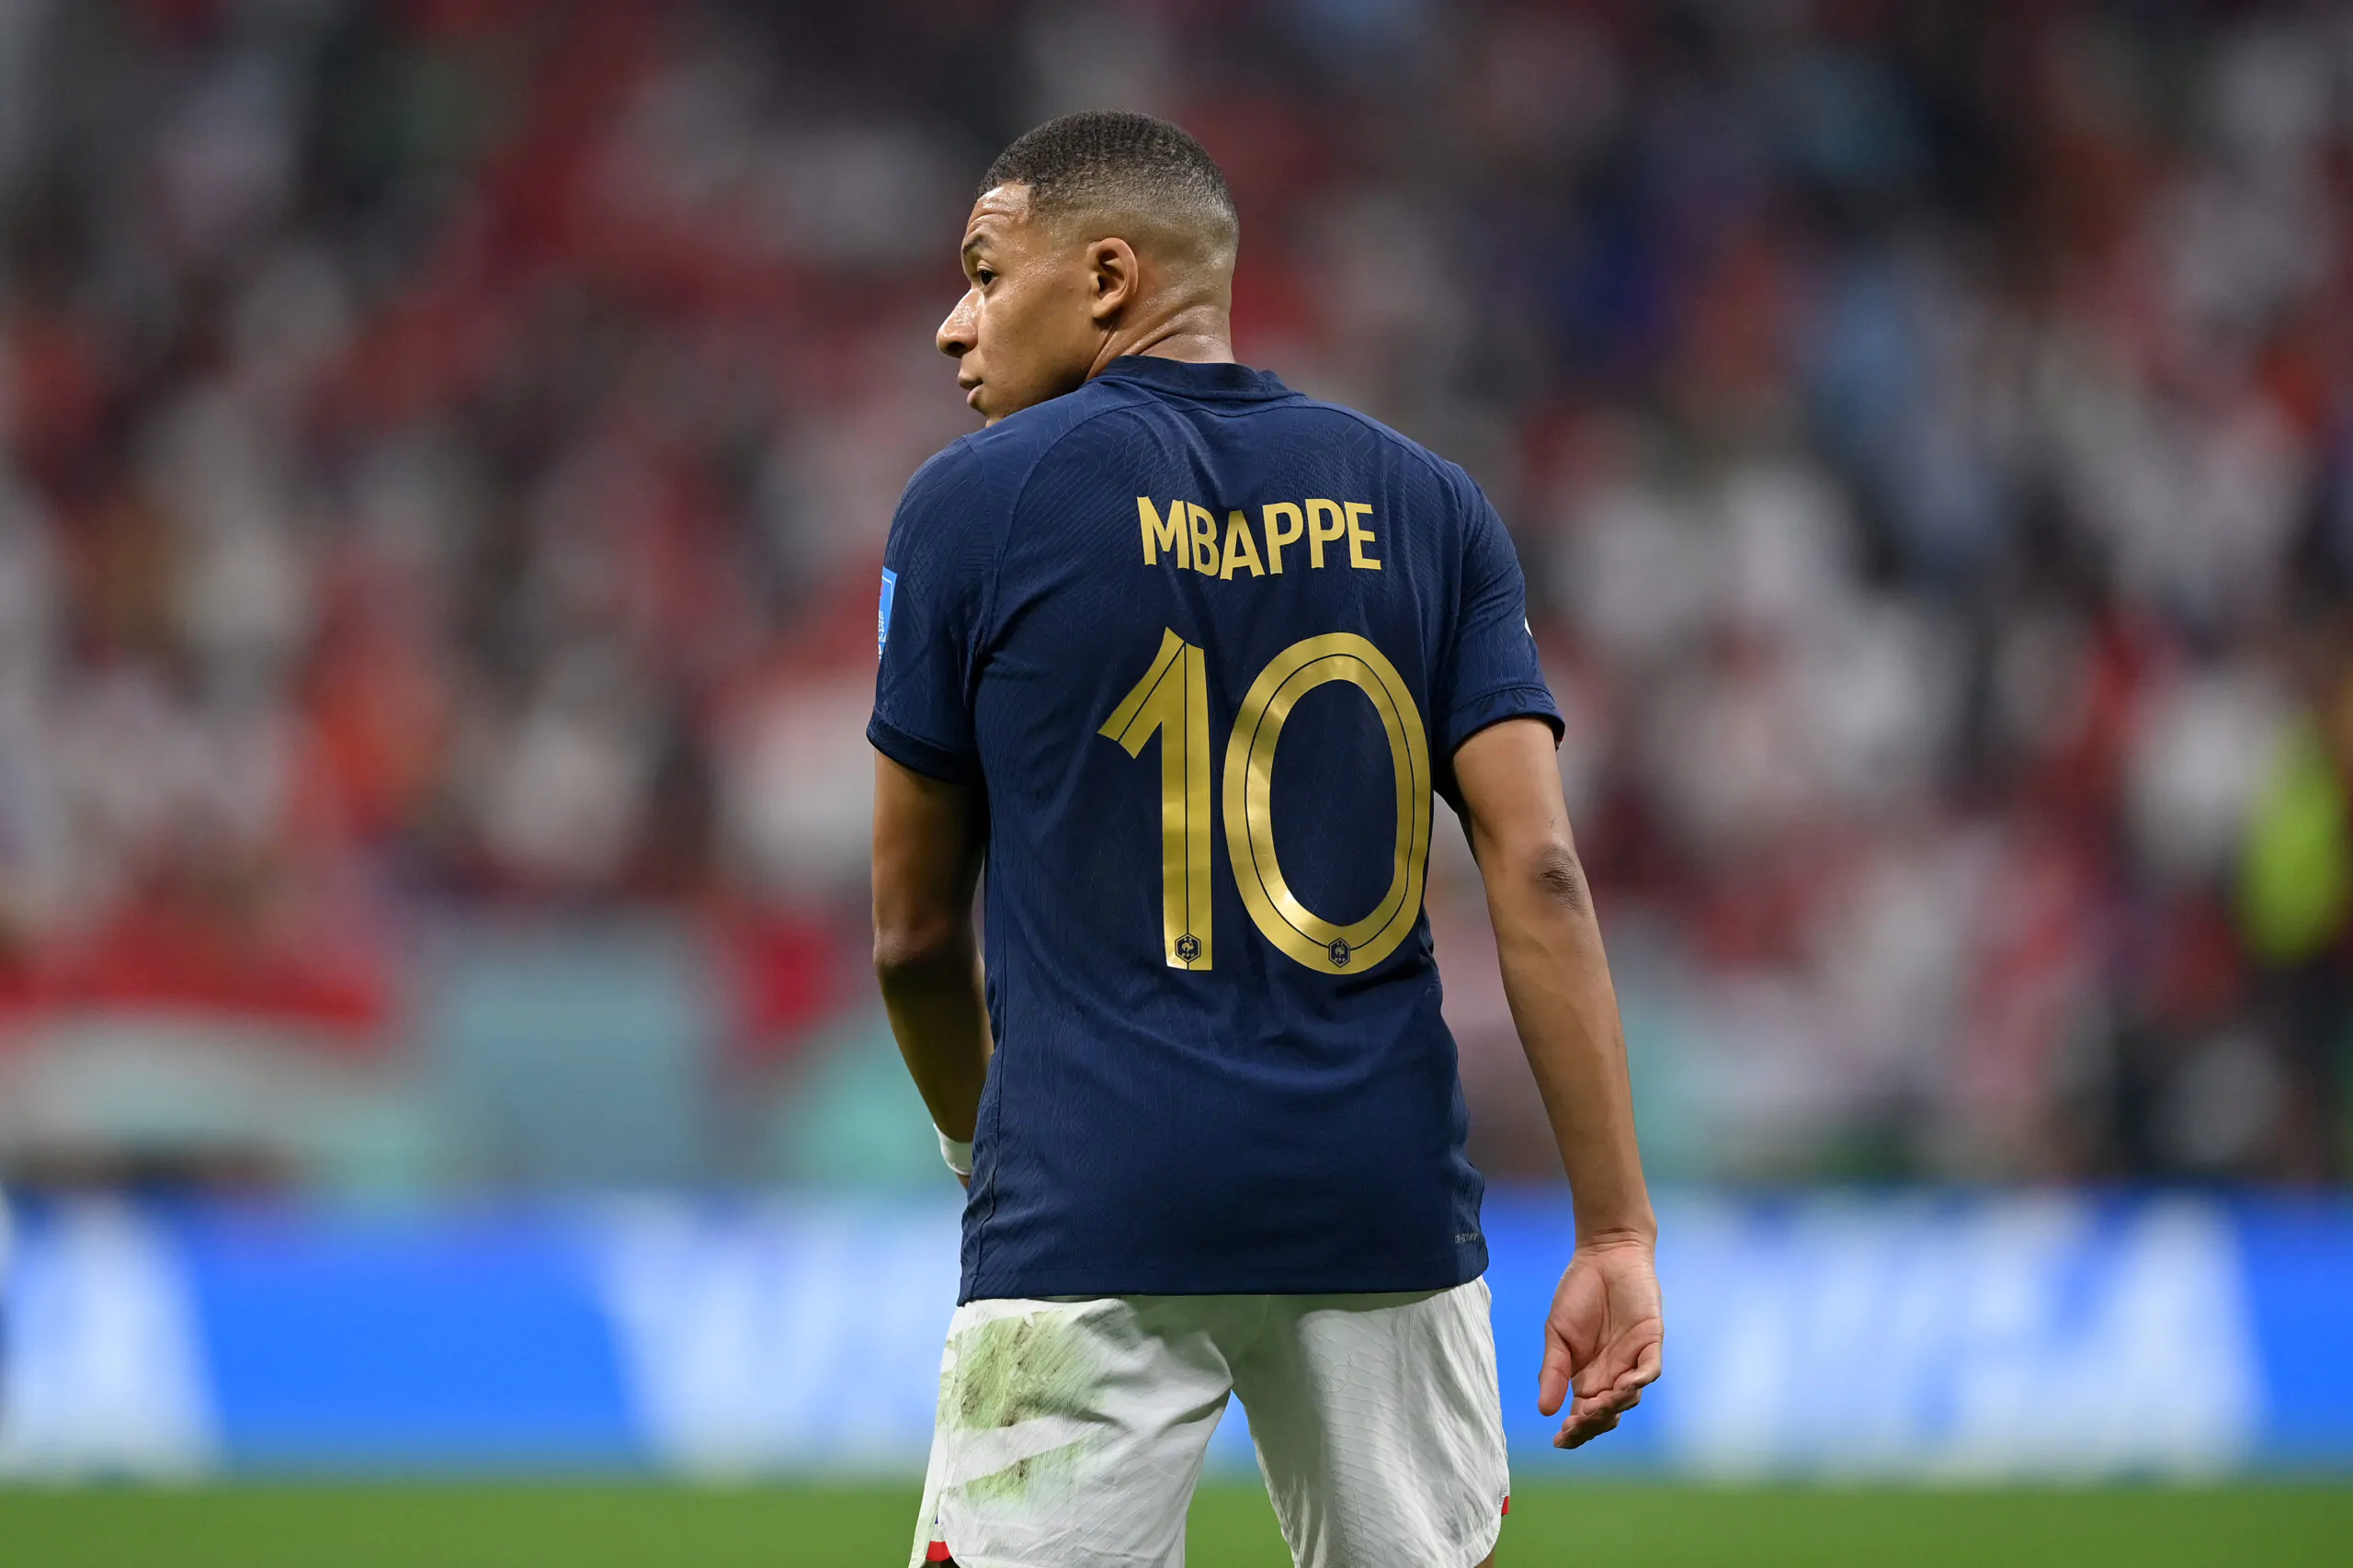 Mondiali, Mbappé è già nella storia: i numeri di un fenomeno